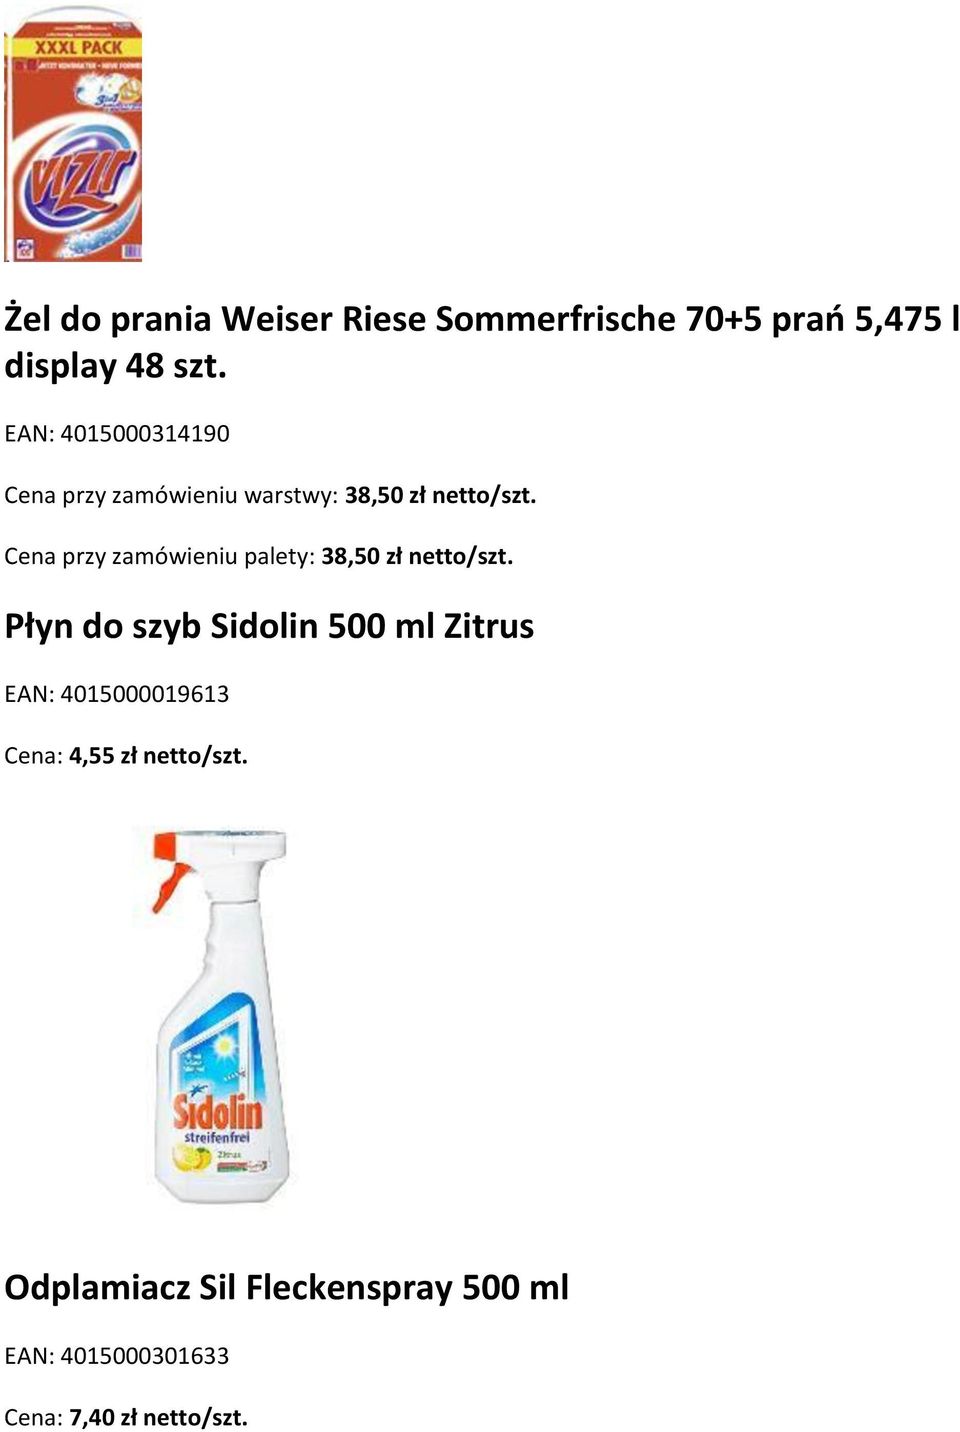 Cena przy zamówieniu palety: 38,50 zł netto/szt.